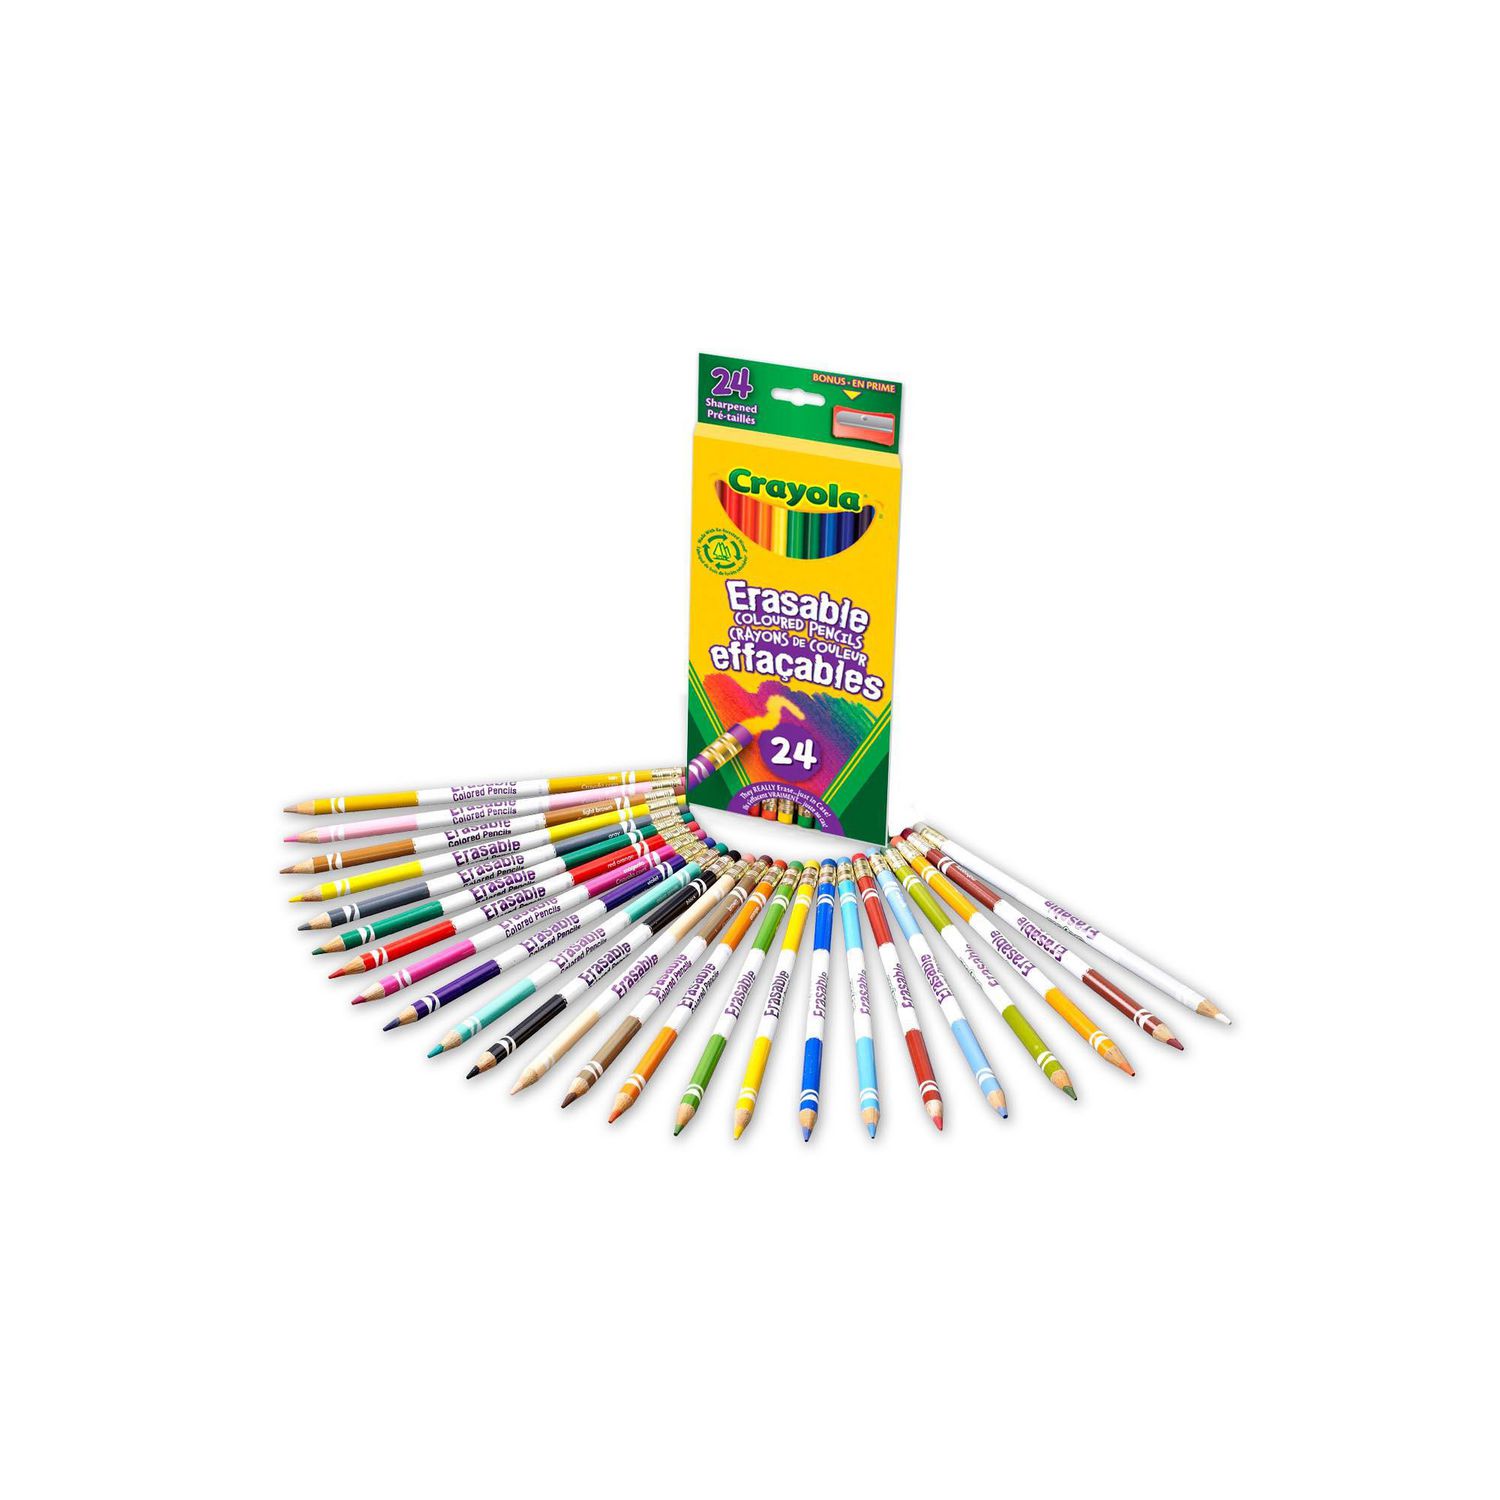 Crayola Erasable Colored Pencils 24 Count